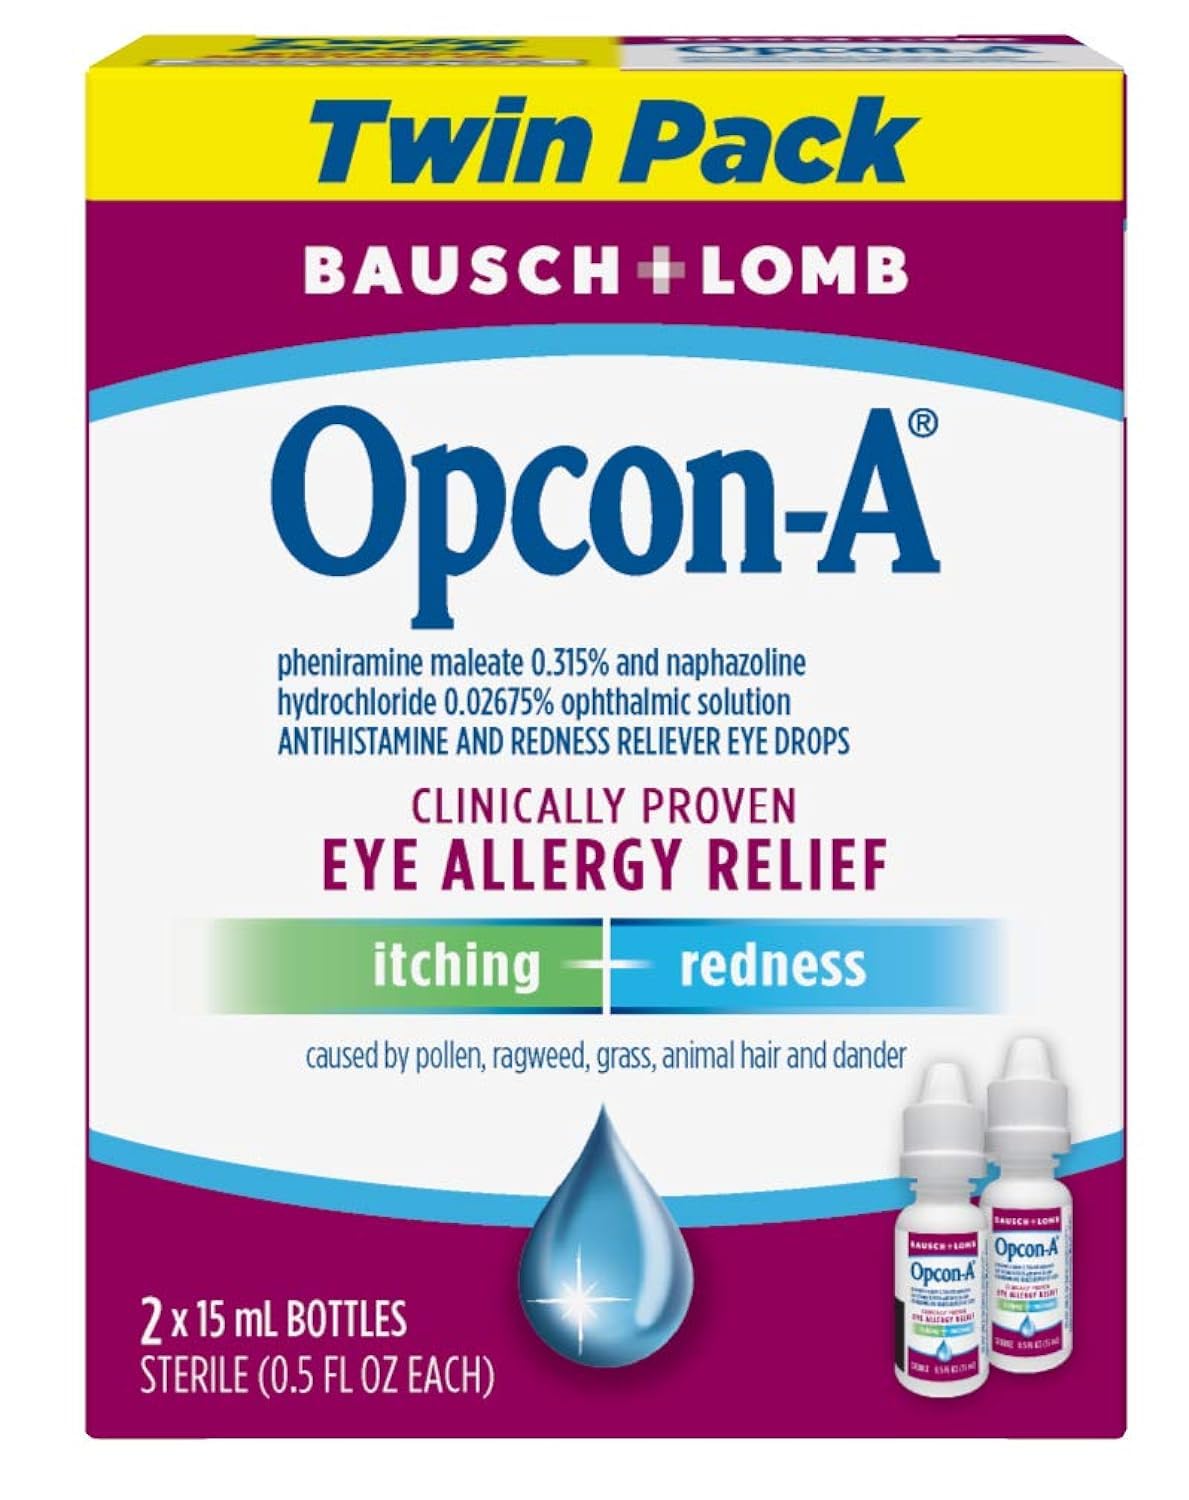 Opcon-A Allergy Eye Drops